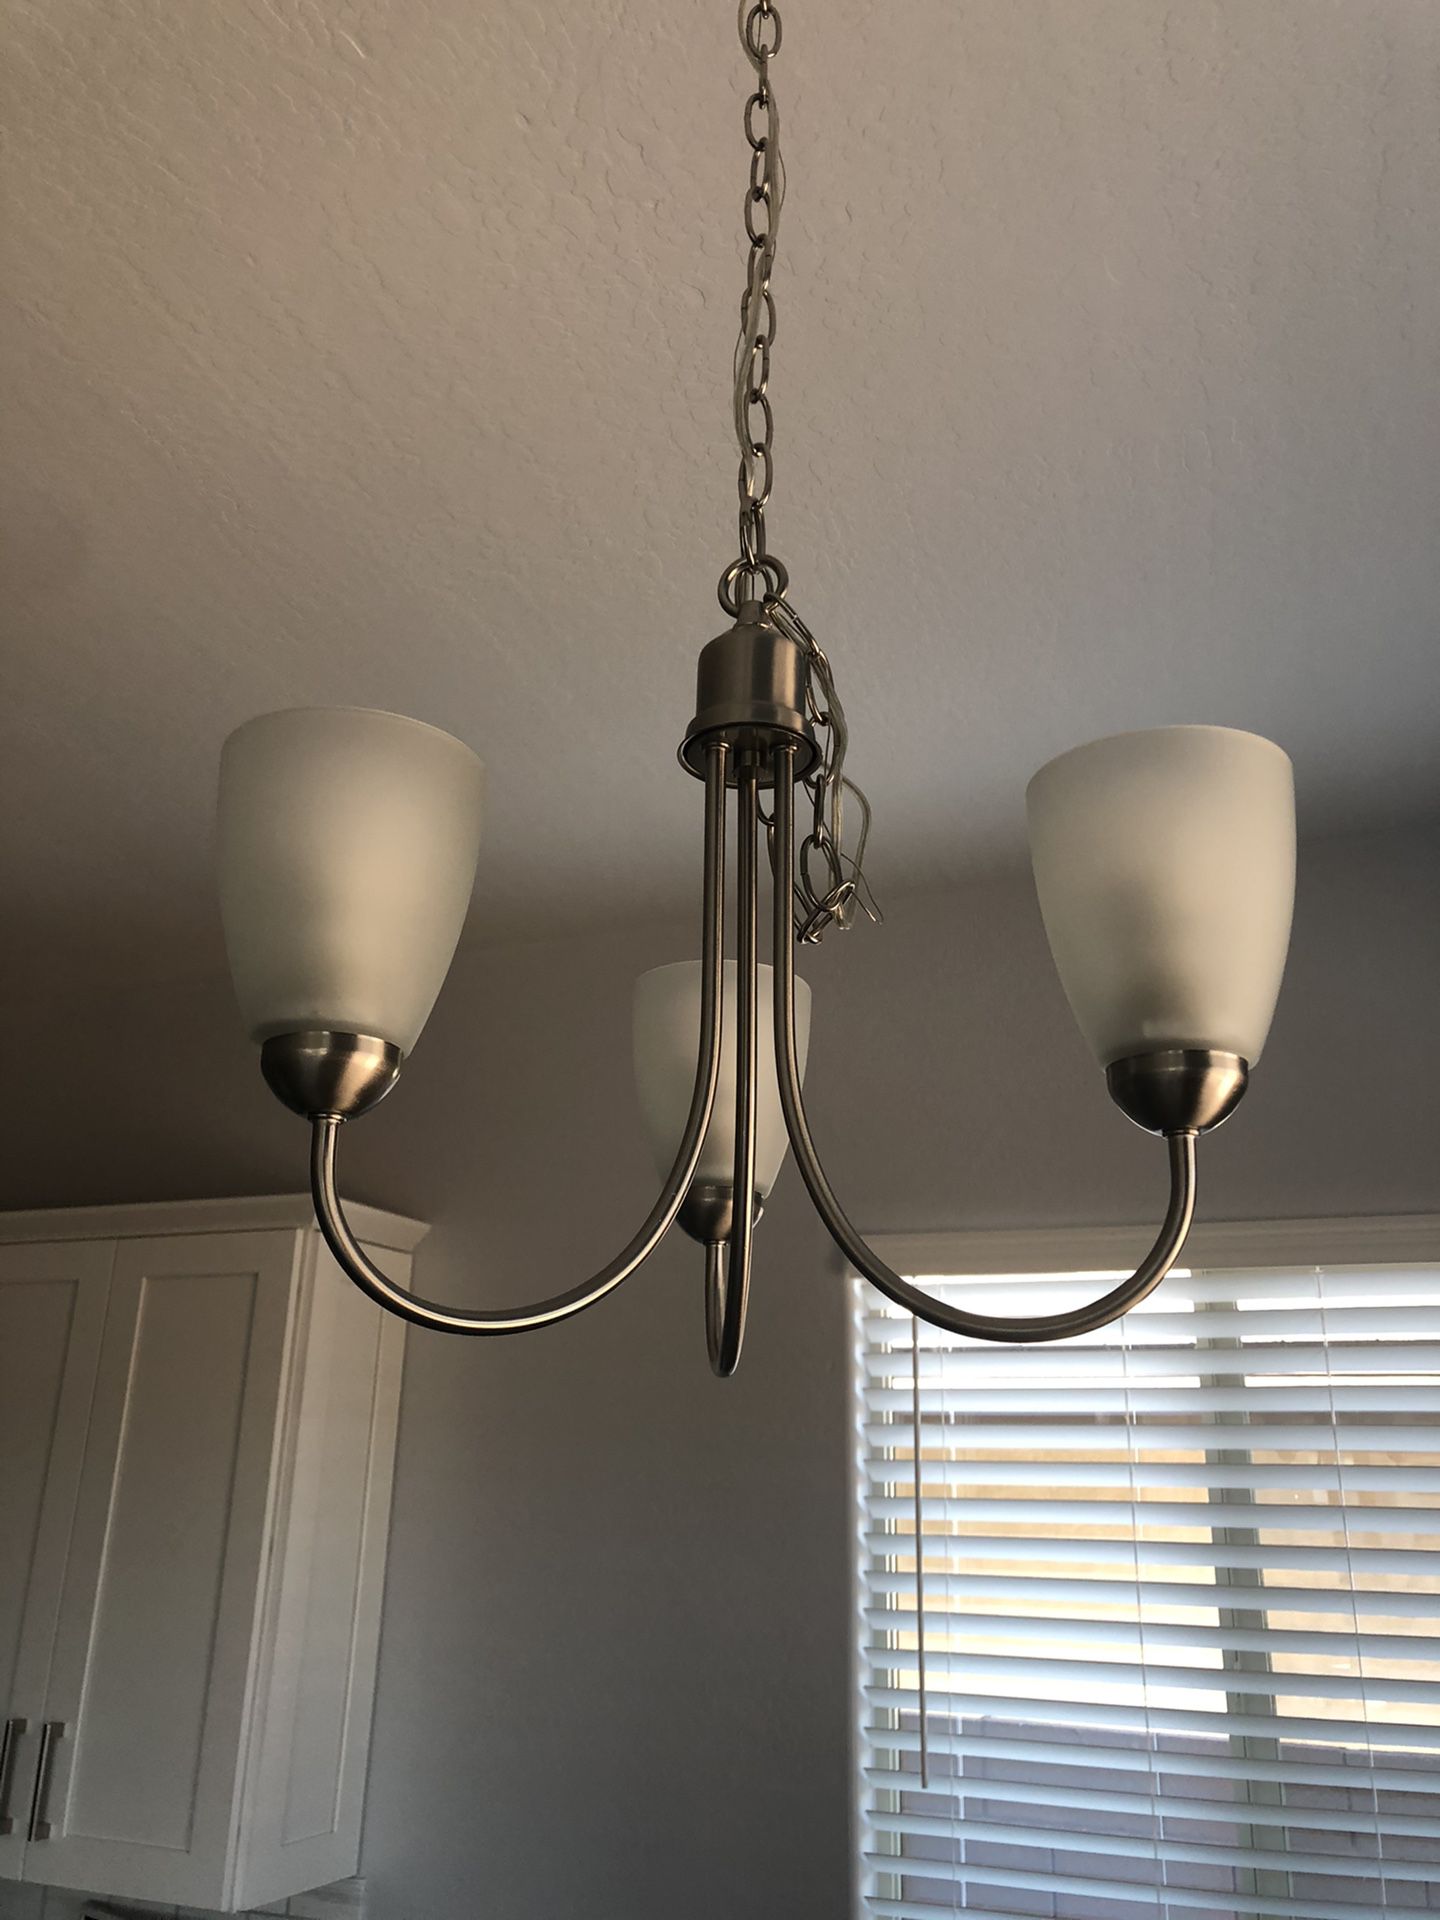 New kitchen light chandelier